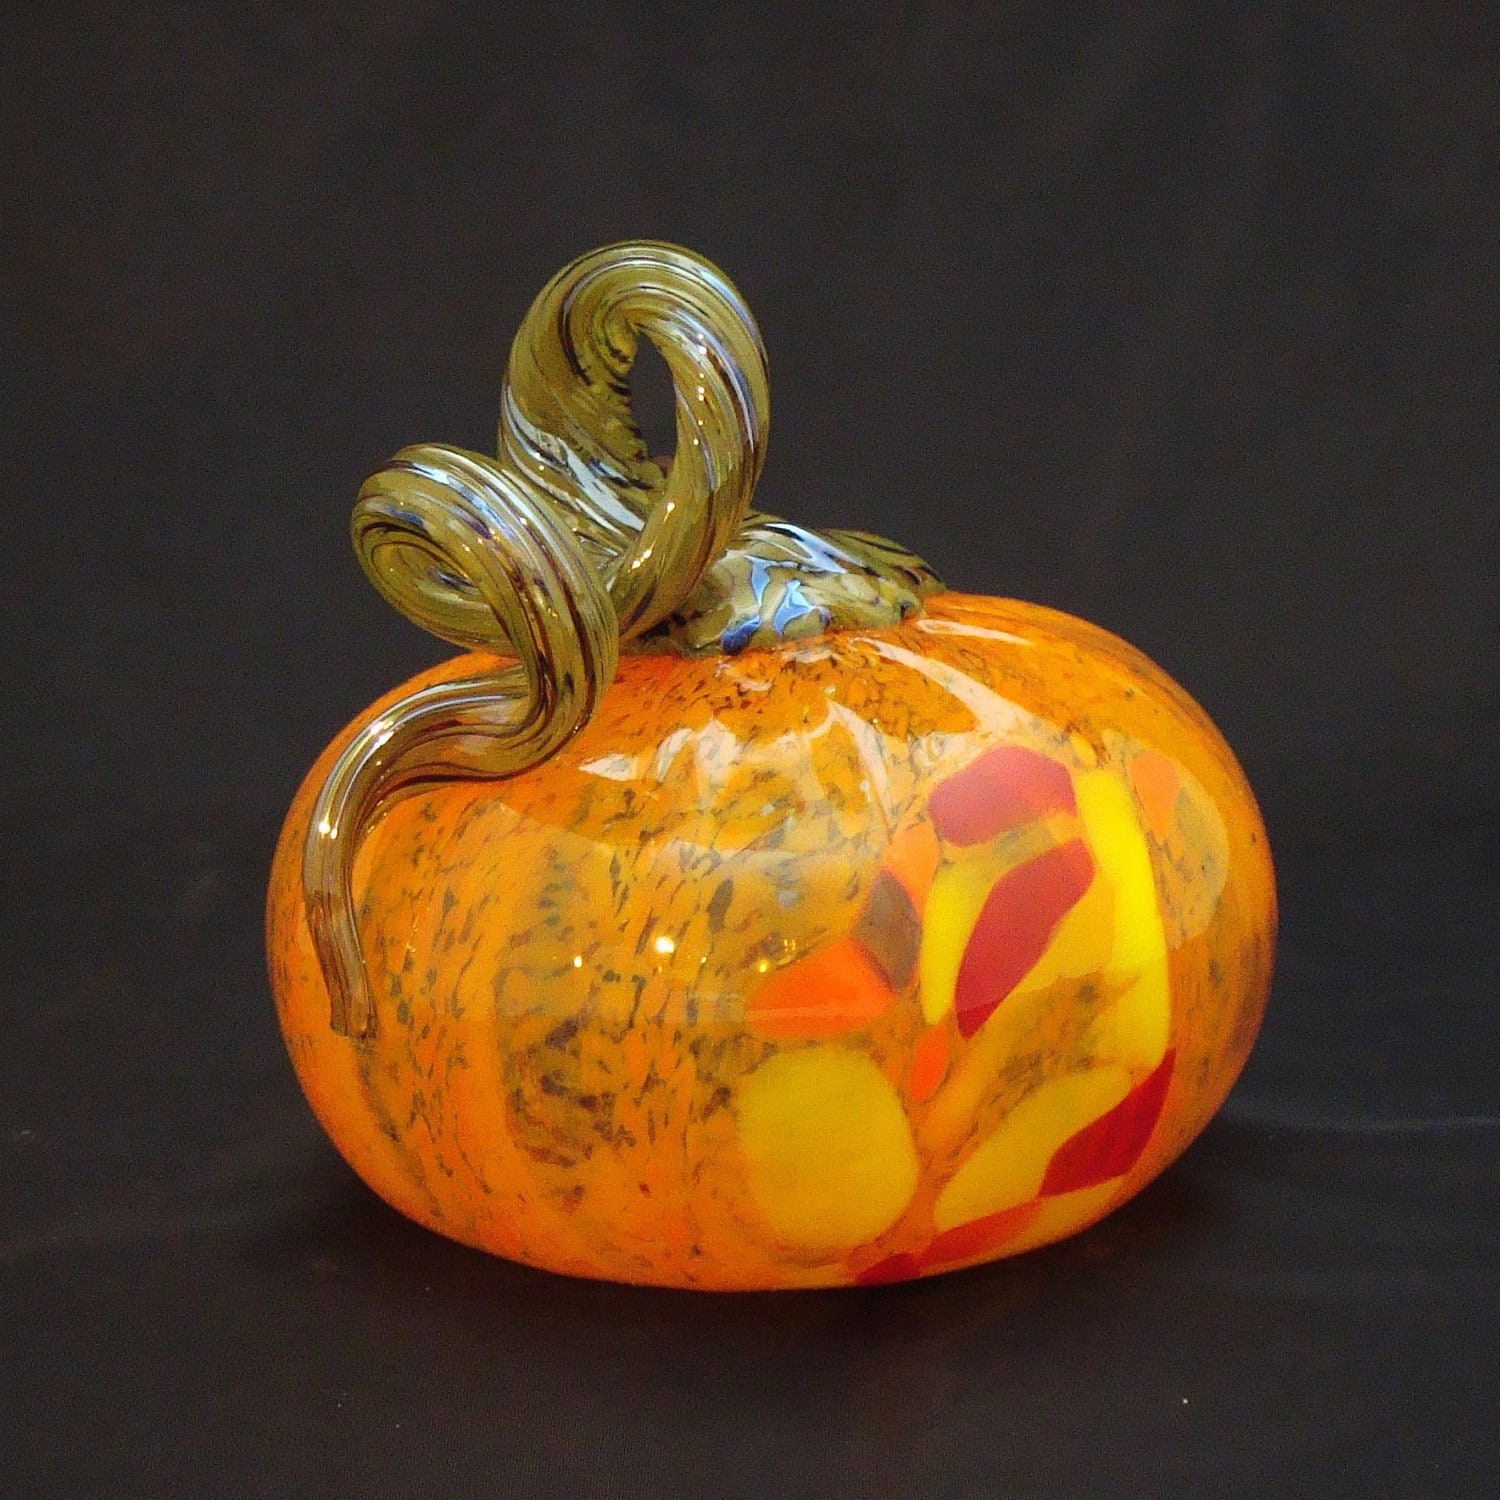 NW Hand-blown glass pumpkins